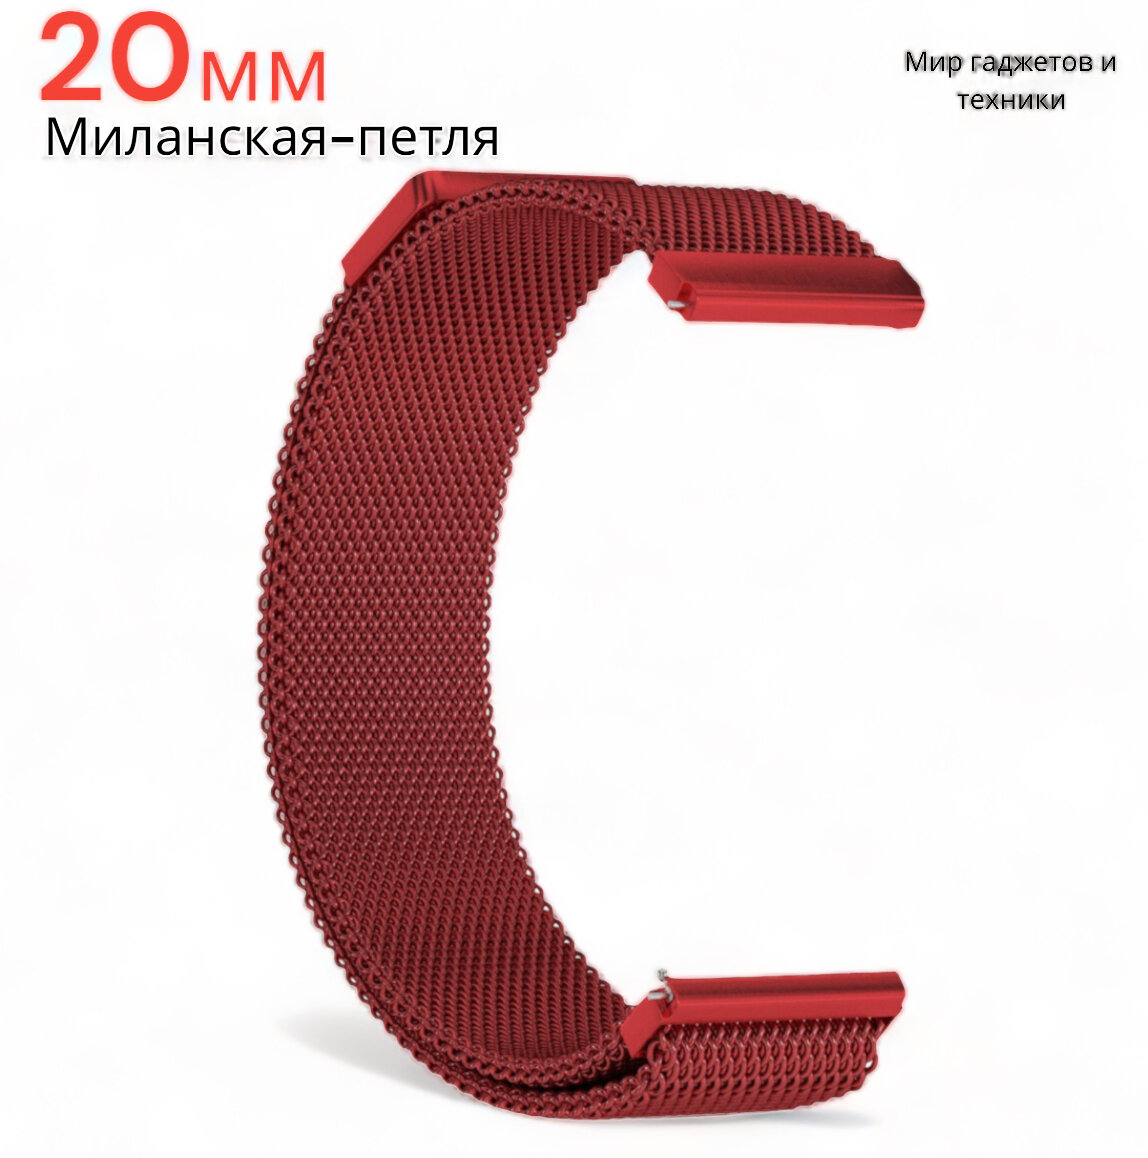 Металлический магнитный ремешок 20мм для Amazfit Bip /GTR /GTS/ Galaxy Watch /Gear /Huawei /Honor миланская петля /красный